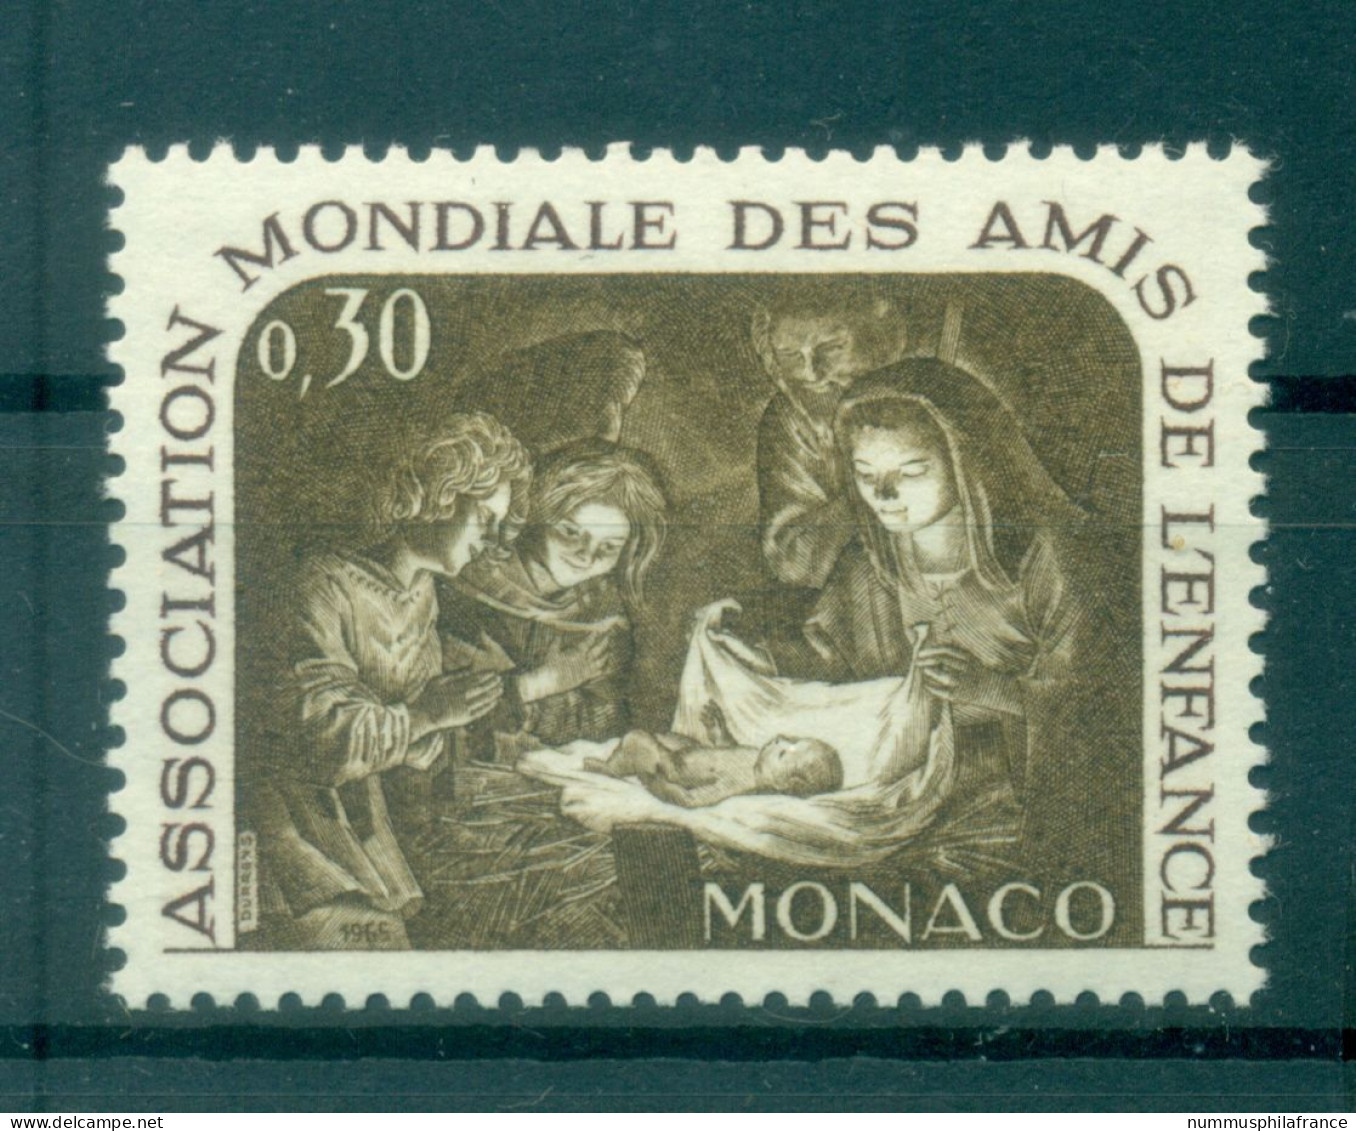 Monaco 1966 - Y & T  N. 688 - AMADE - Nuevos